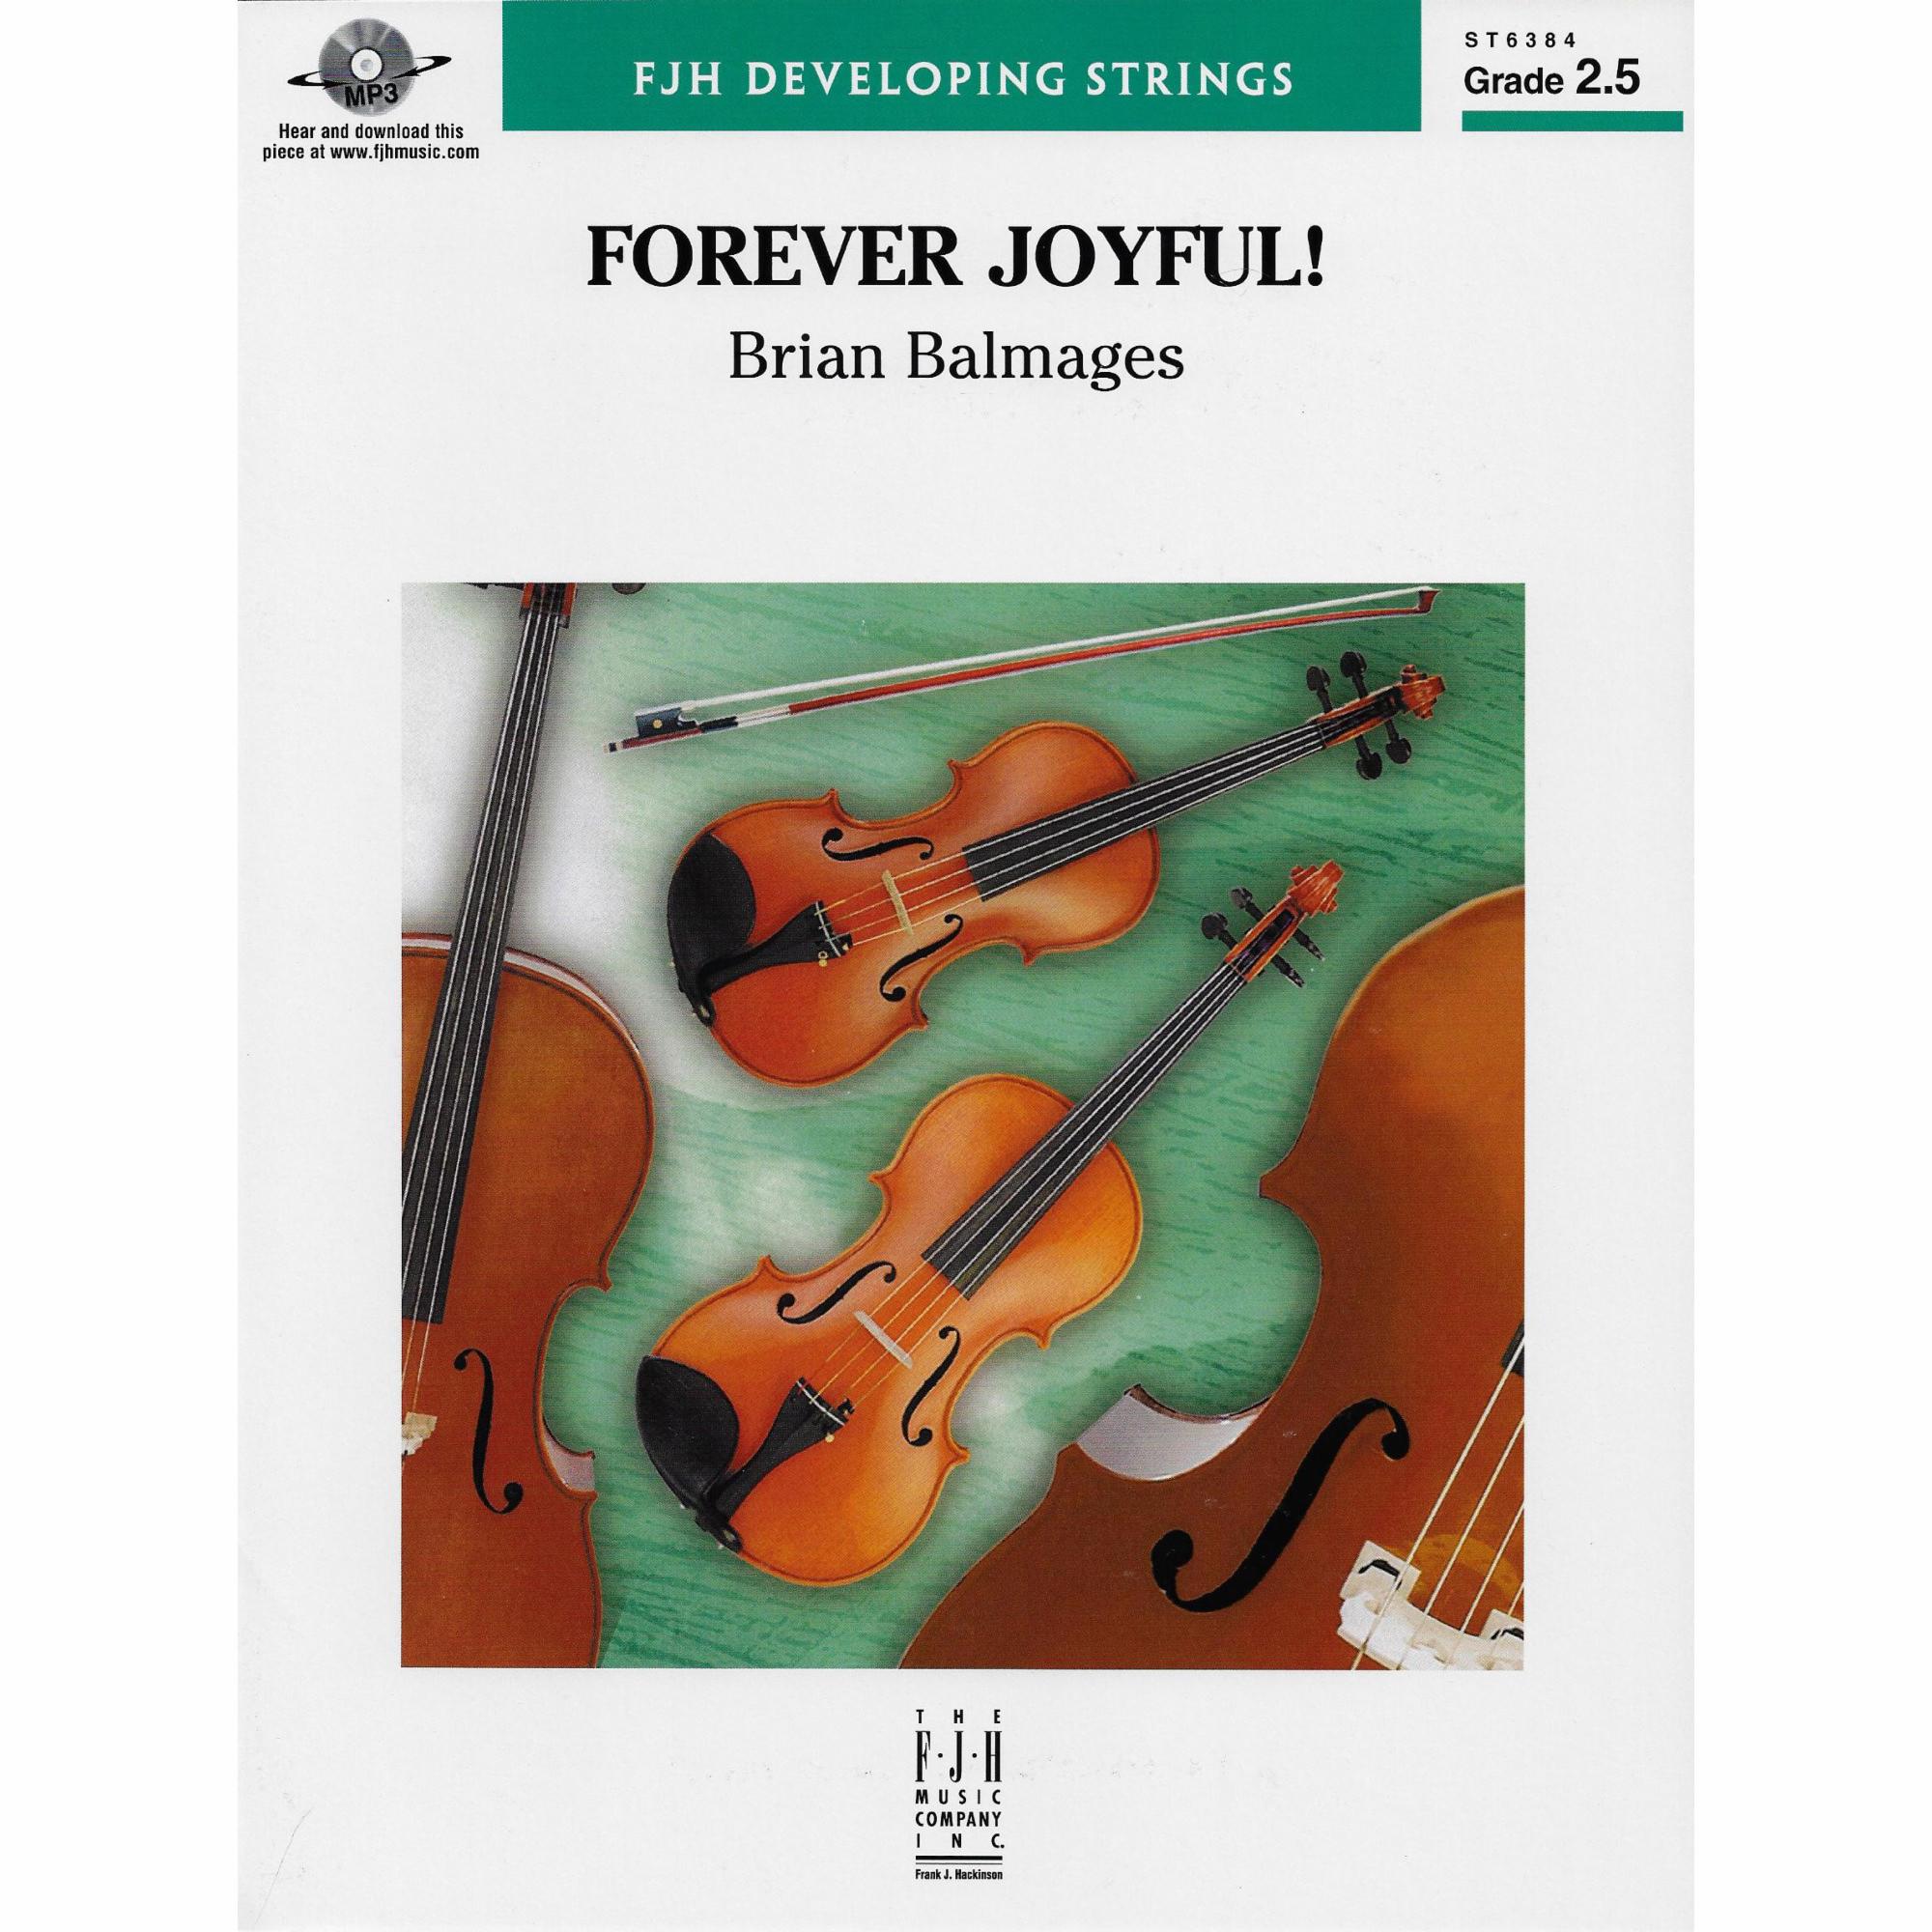 Forever Joyful! for String Orchestra